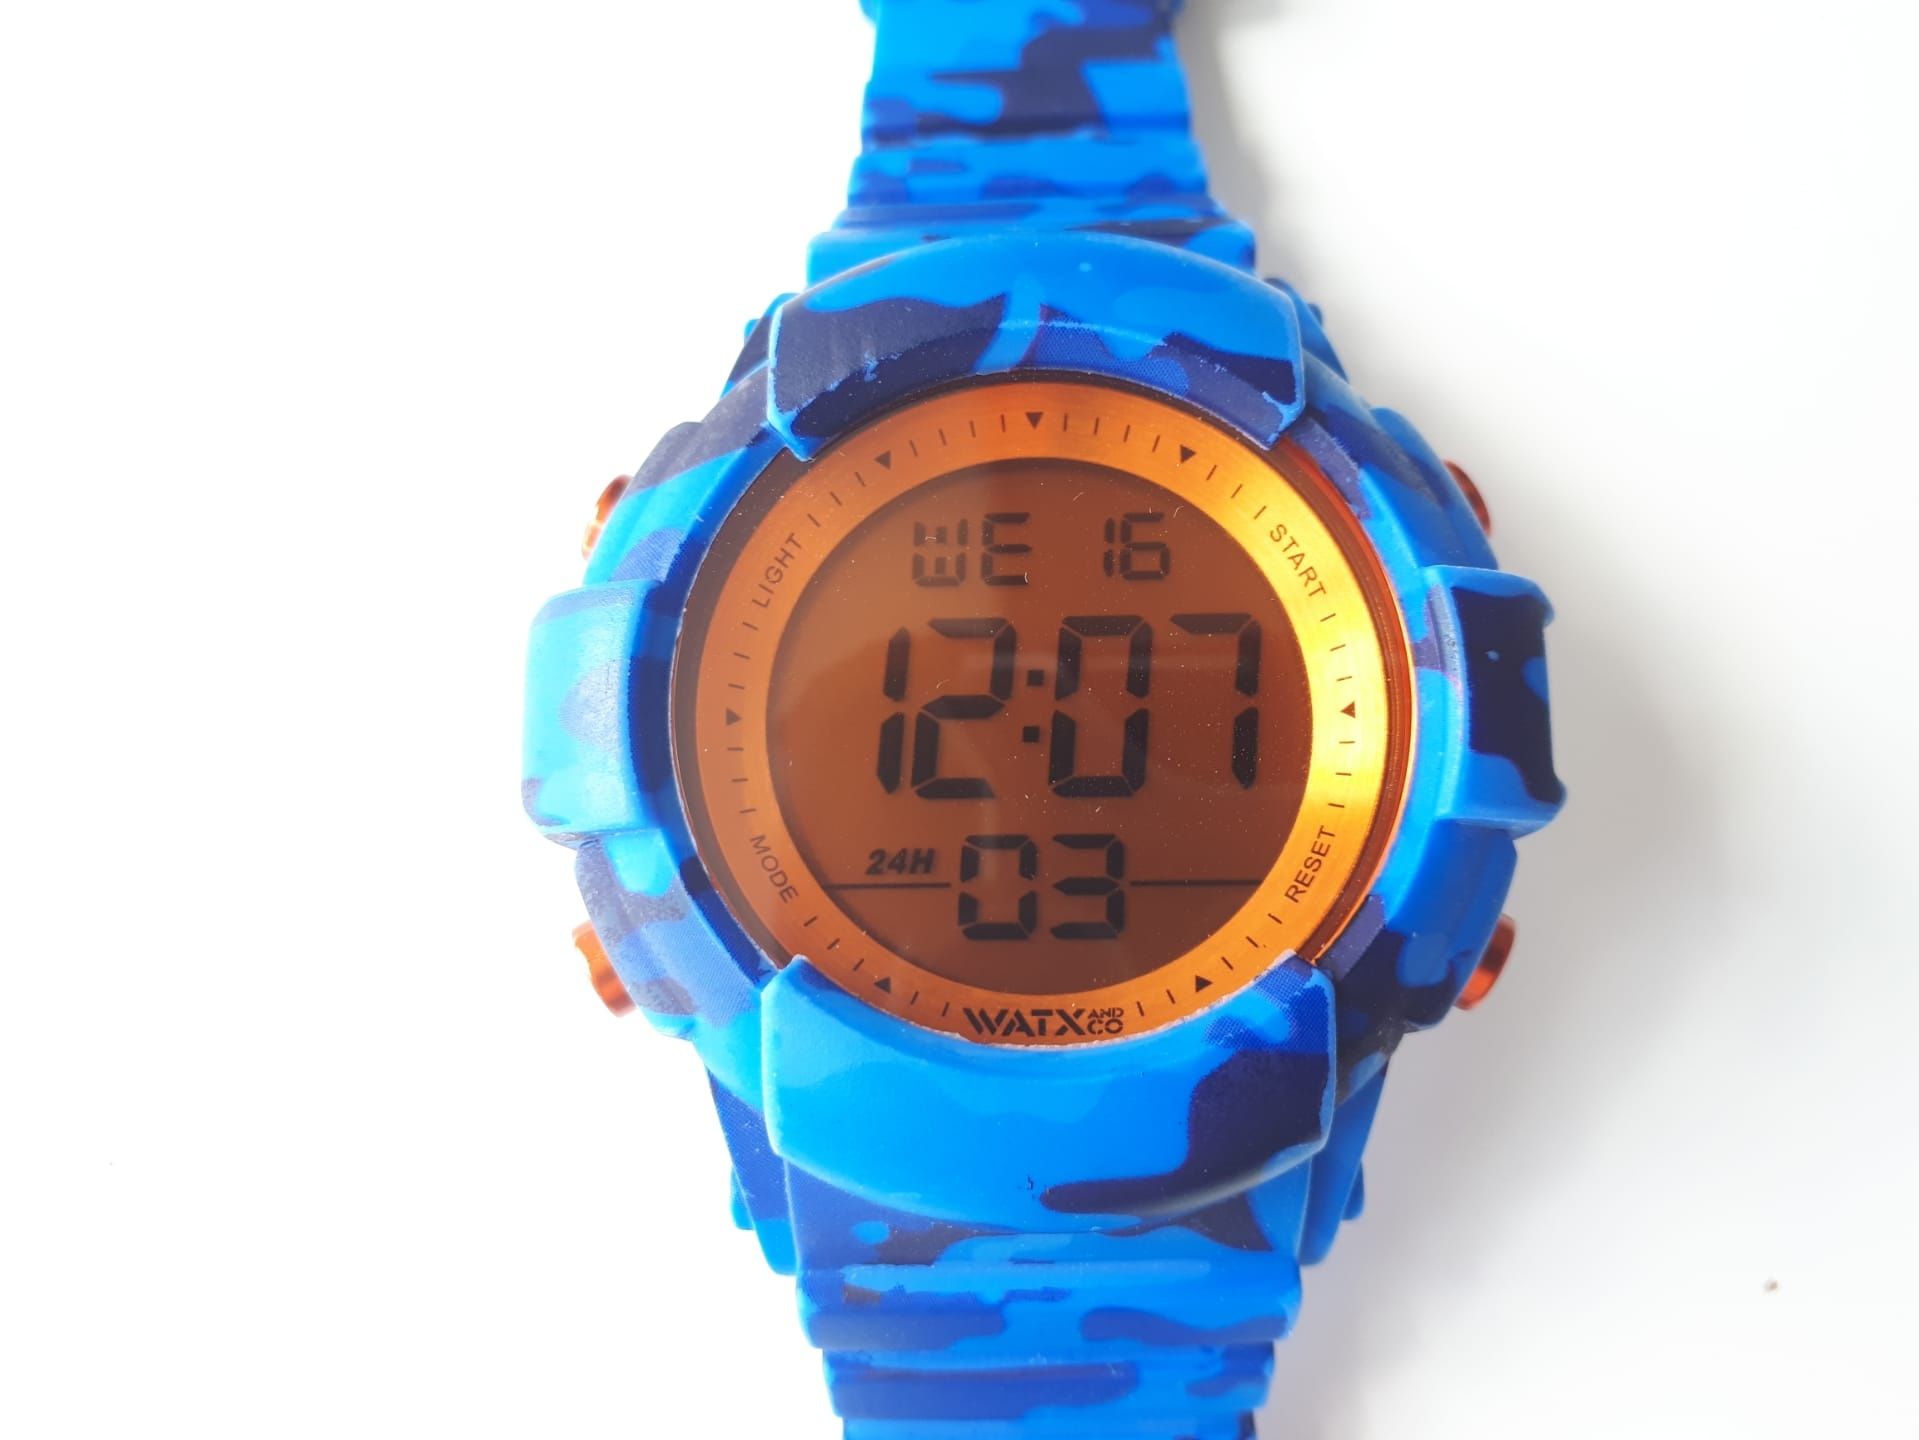 Relógios WATX e Braceletes, várias cores e modelos